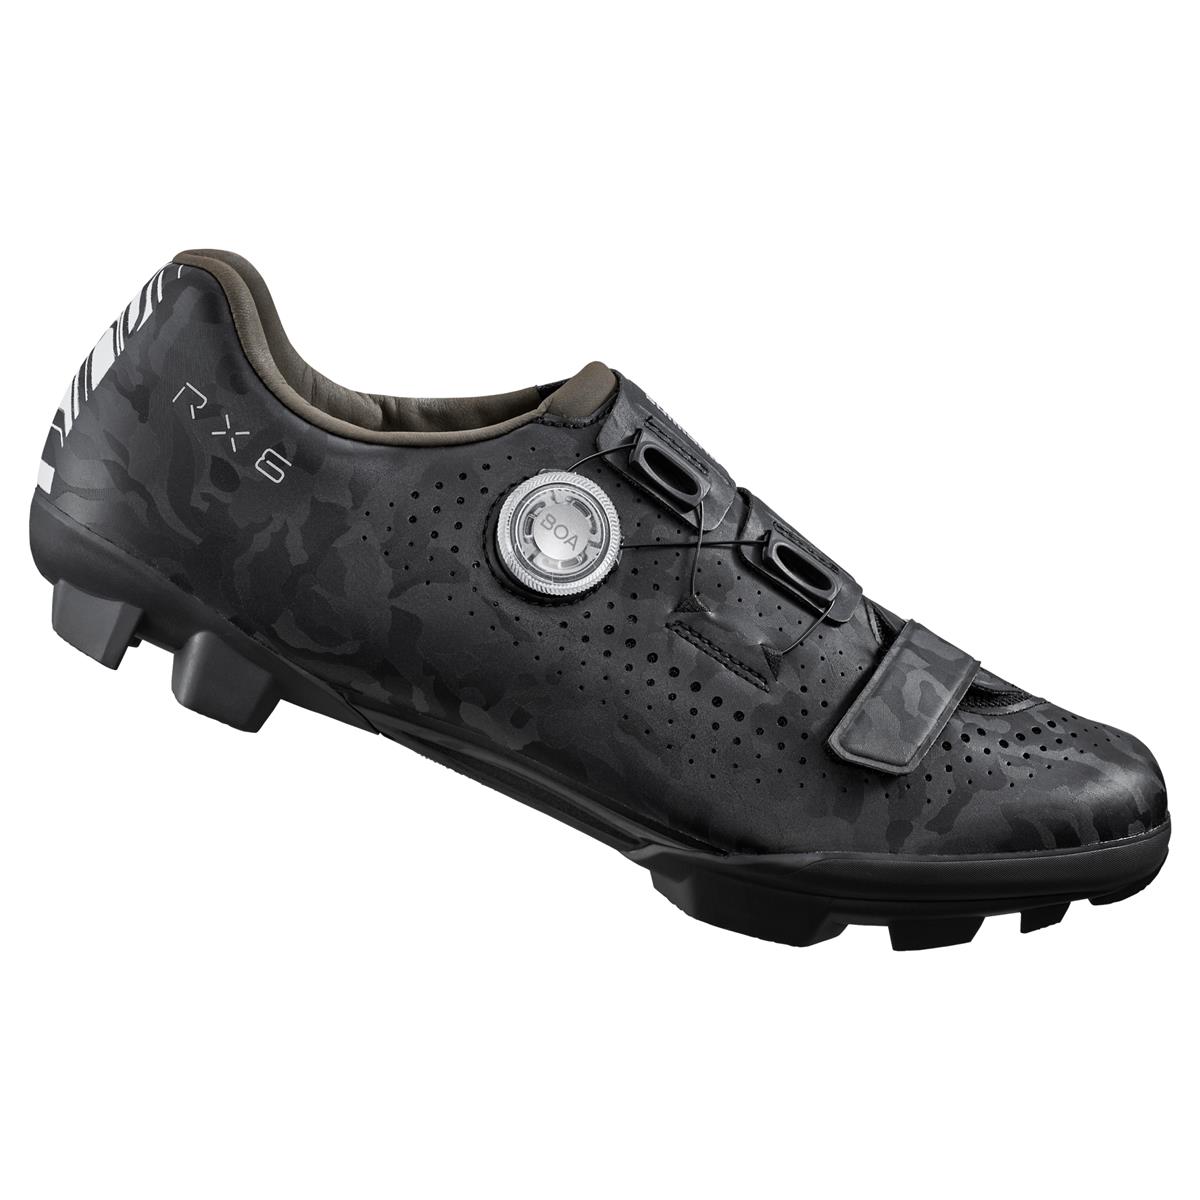 MTB / Gravel Shoes SH-RX600 RX6 Black Size 39